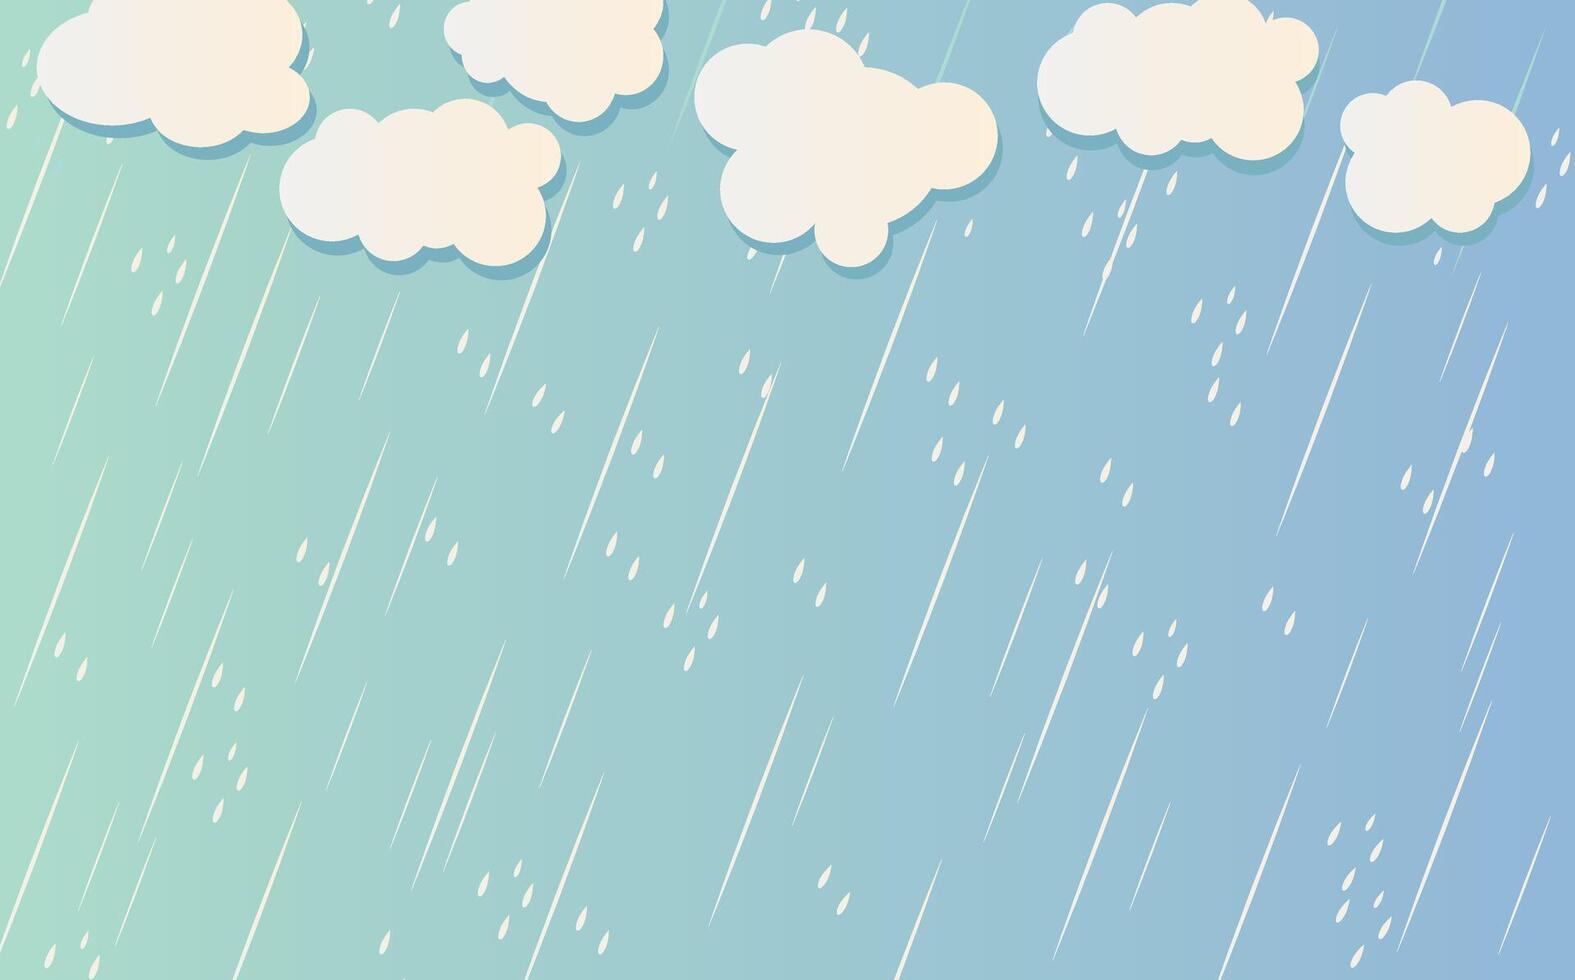 Regen Tropfen isoliert auf Blau Hintergrund. Regenfall. Wolke und Regen, regnerisch Jahreszeit, Vektor Design, Illustration.